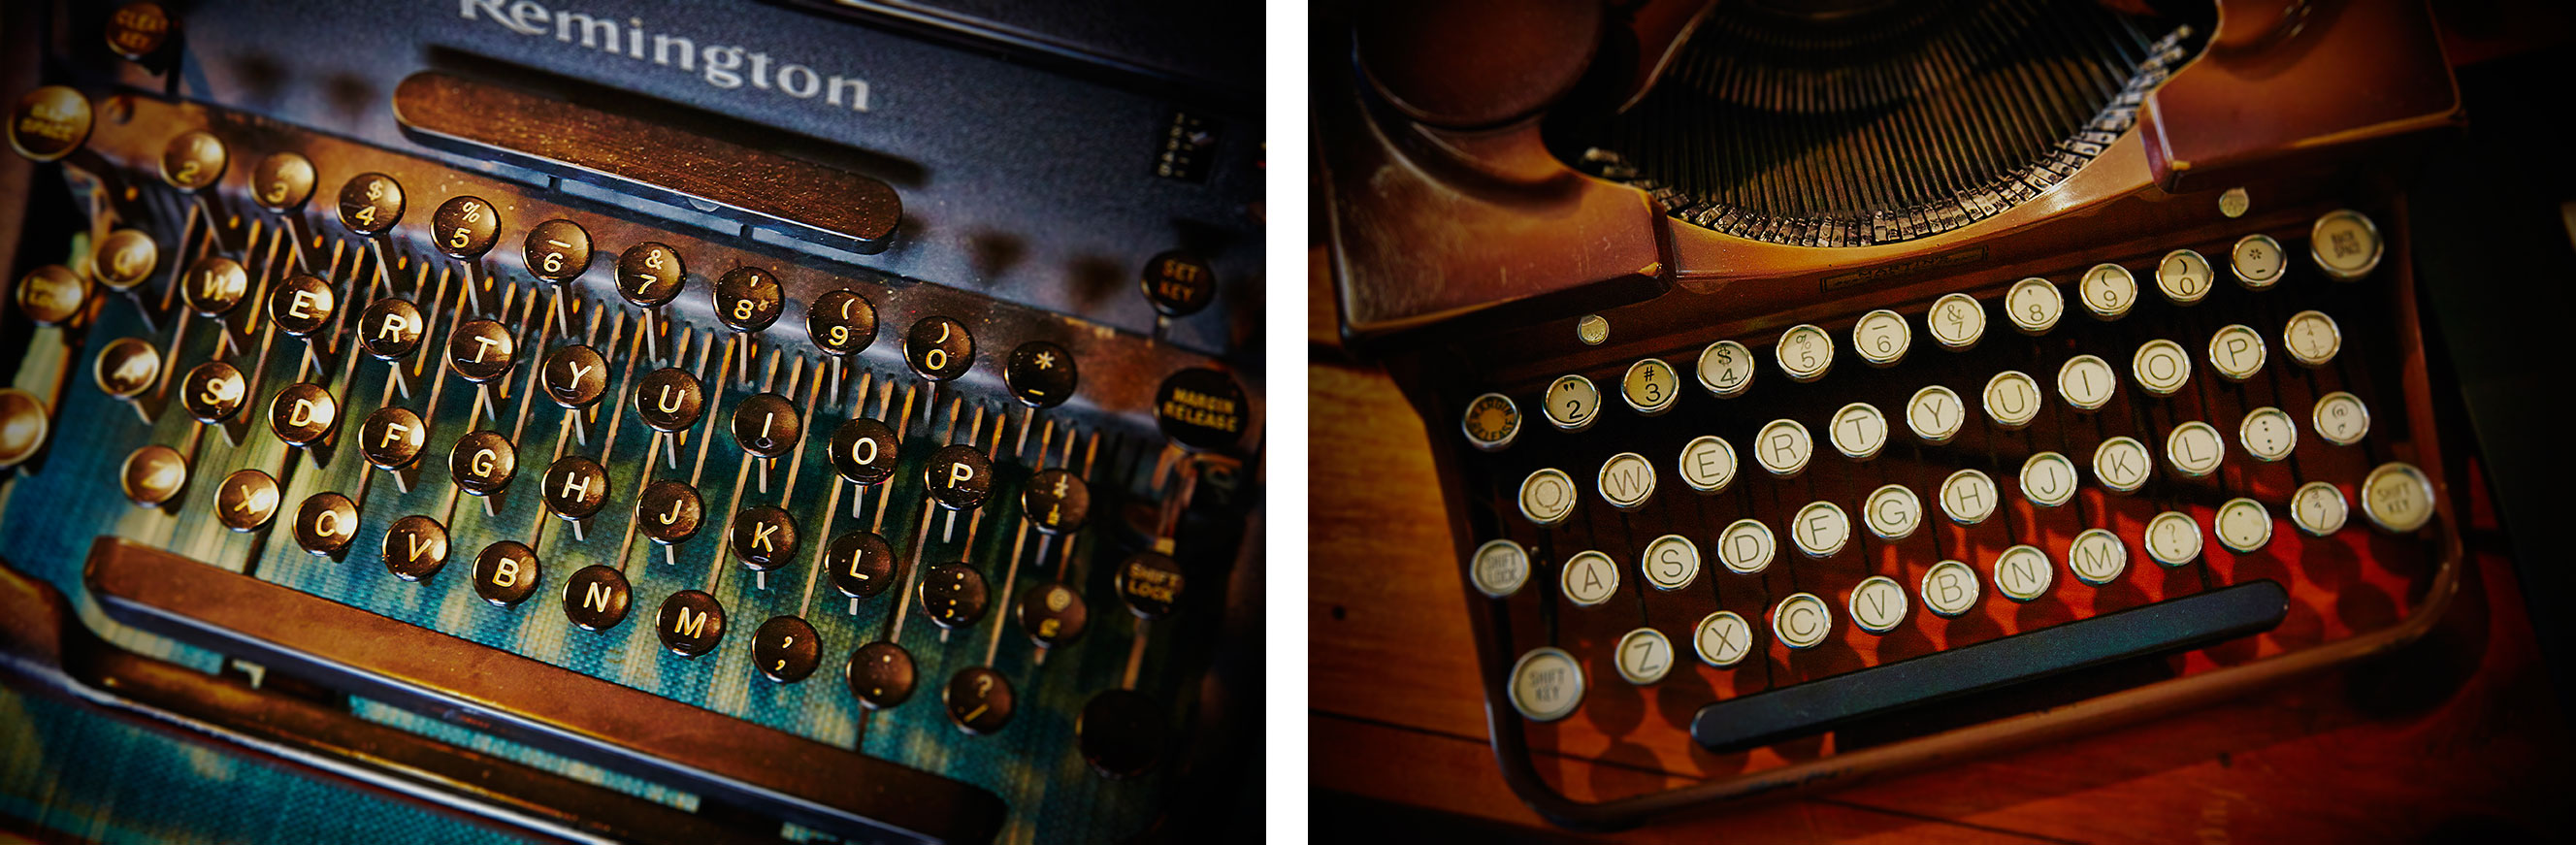 typewriter phots ©2014 bret wills